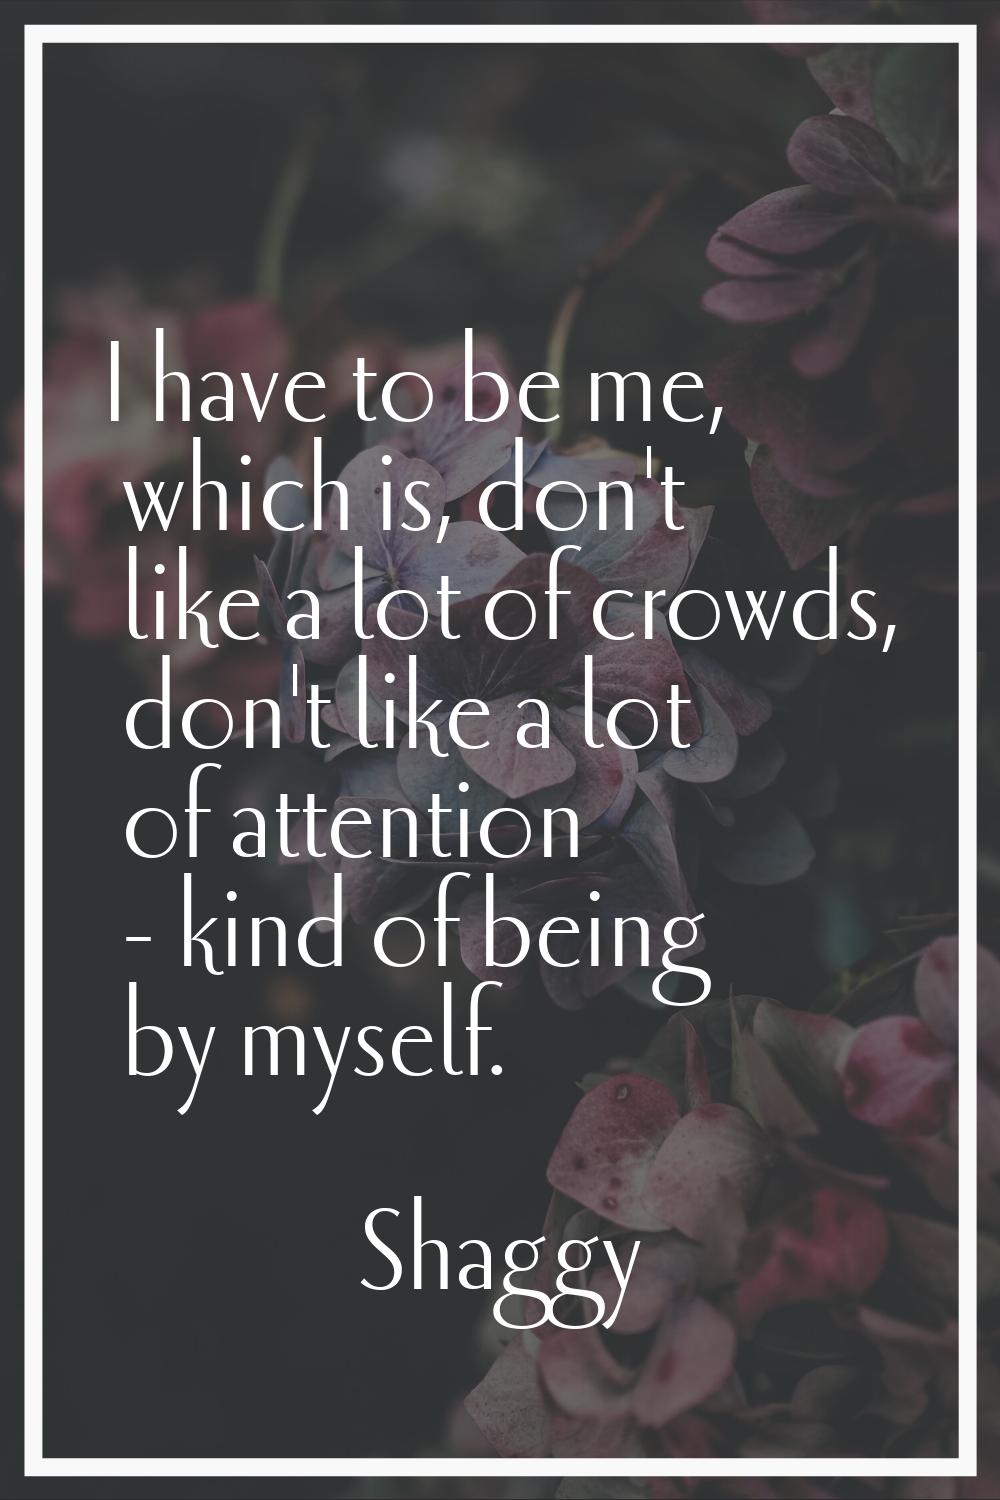 I have to be me, which is, don't like a lot of crowds, don't like a lot of attention - kind of bein